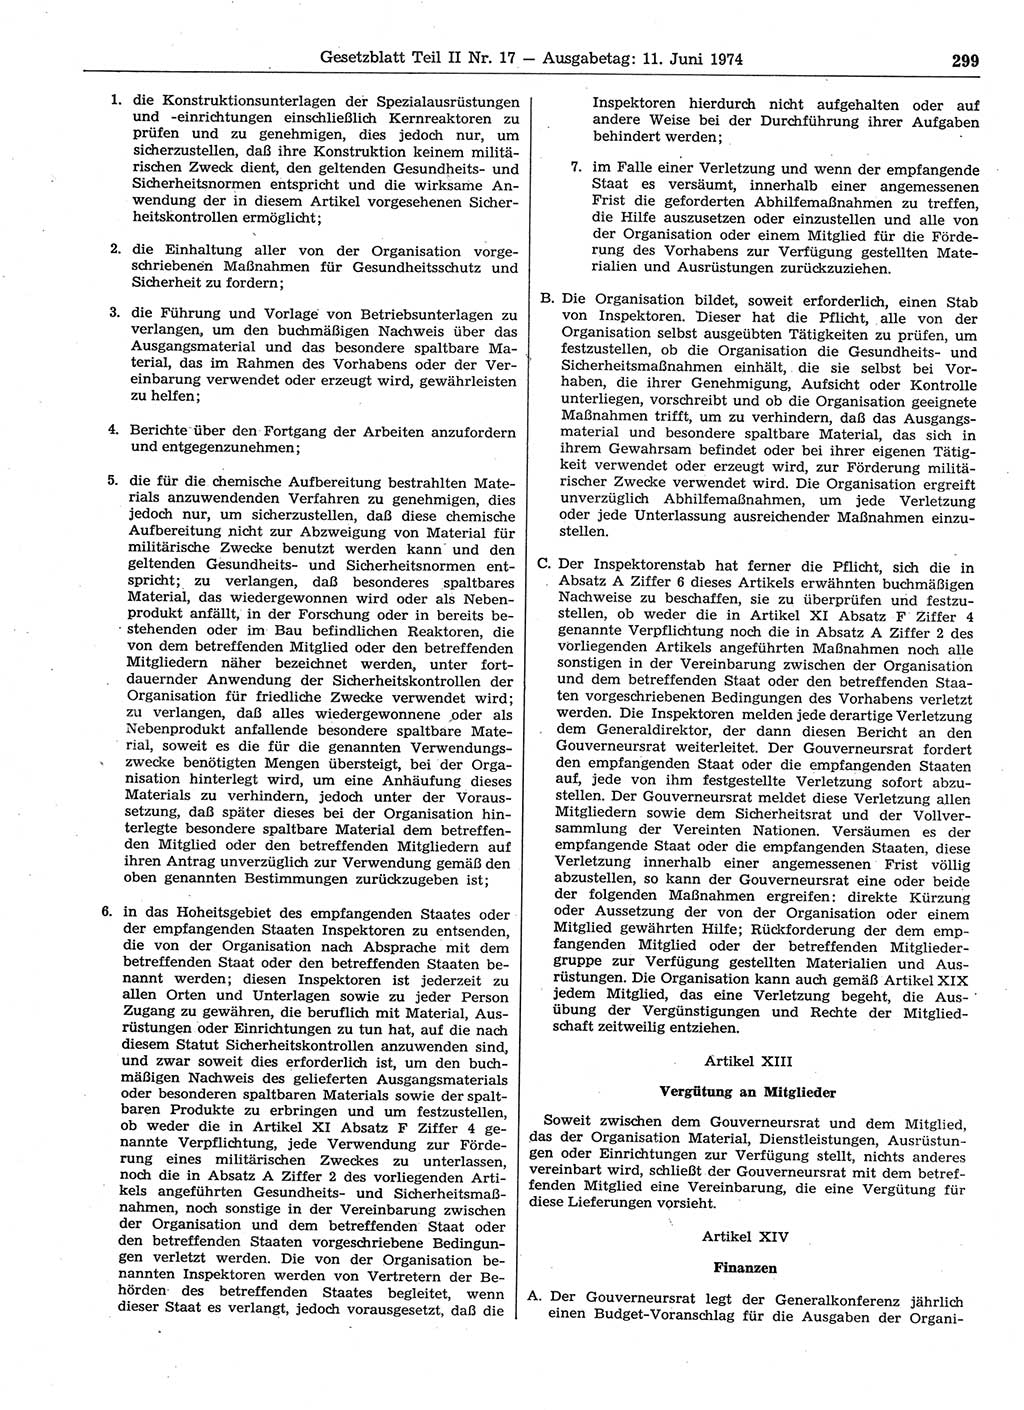 Gesetzblatt (GBl.) der Deutschen Demokratischen Republik (DDR) Teil ⅠⅠ 1974, Seite 299 (GBl. DDR ⅠⅠ 1974, S. 299)